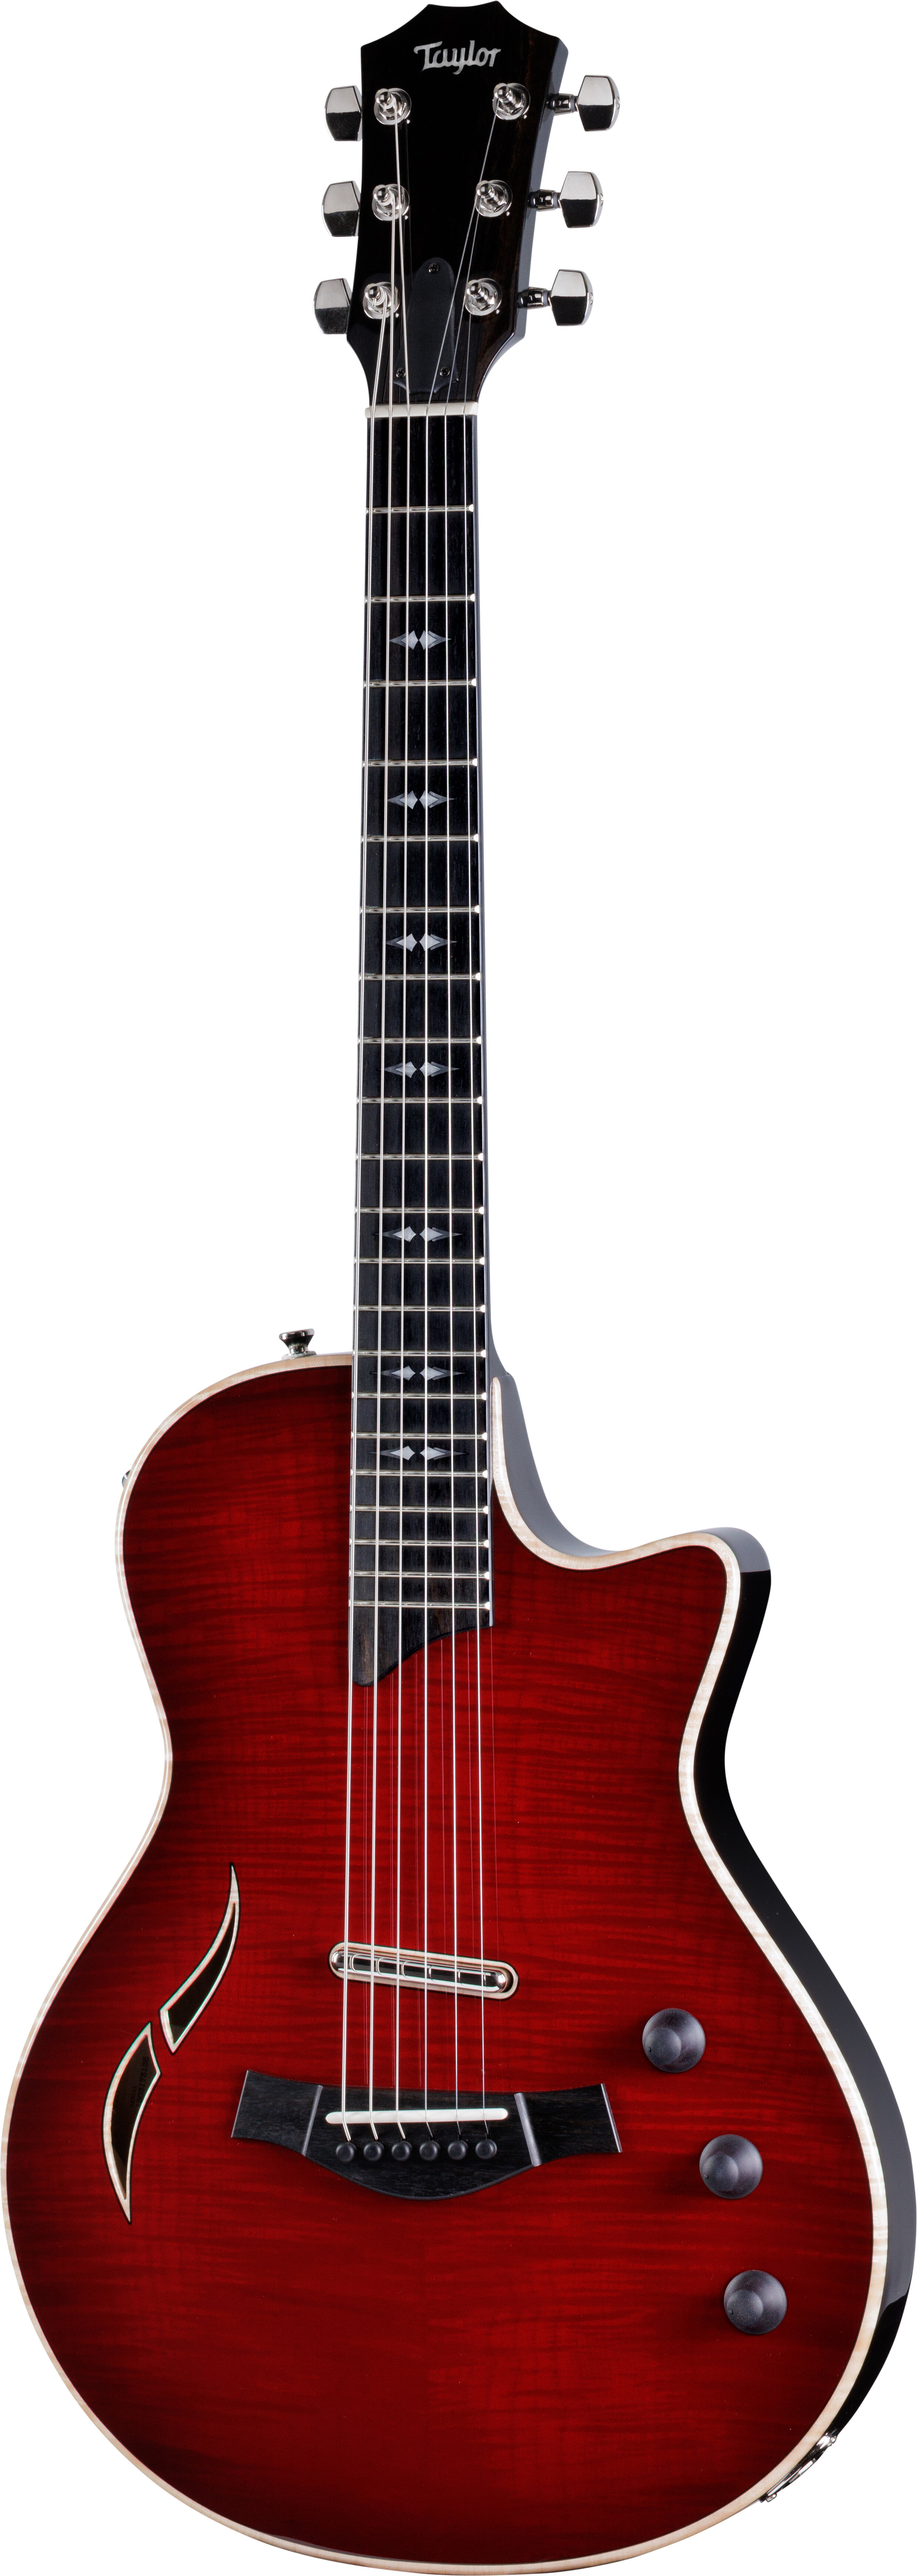 Taylor T5z Pro Armrest Electric Guitar Cayenne Red -  Taylor Guitars, T5z-Pro-Red-Armrest